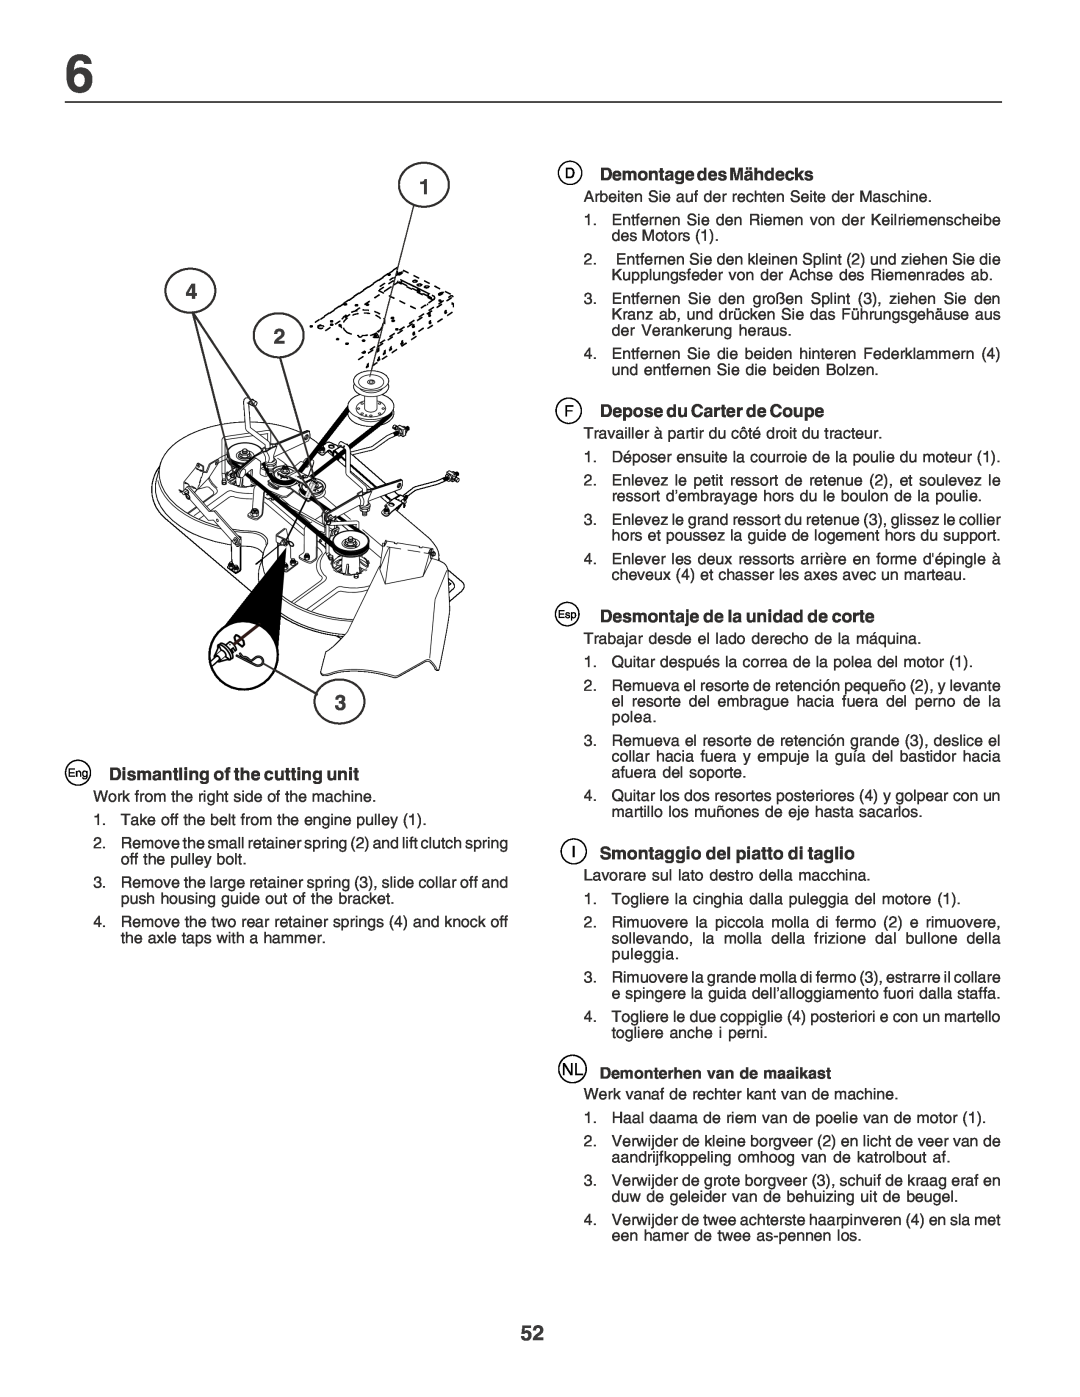 Husqvarna LT135 instruction manual Eng Dismantling of the cutting unit, Demontage des Mähdecks, F Depose du Carter de Coupe 